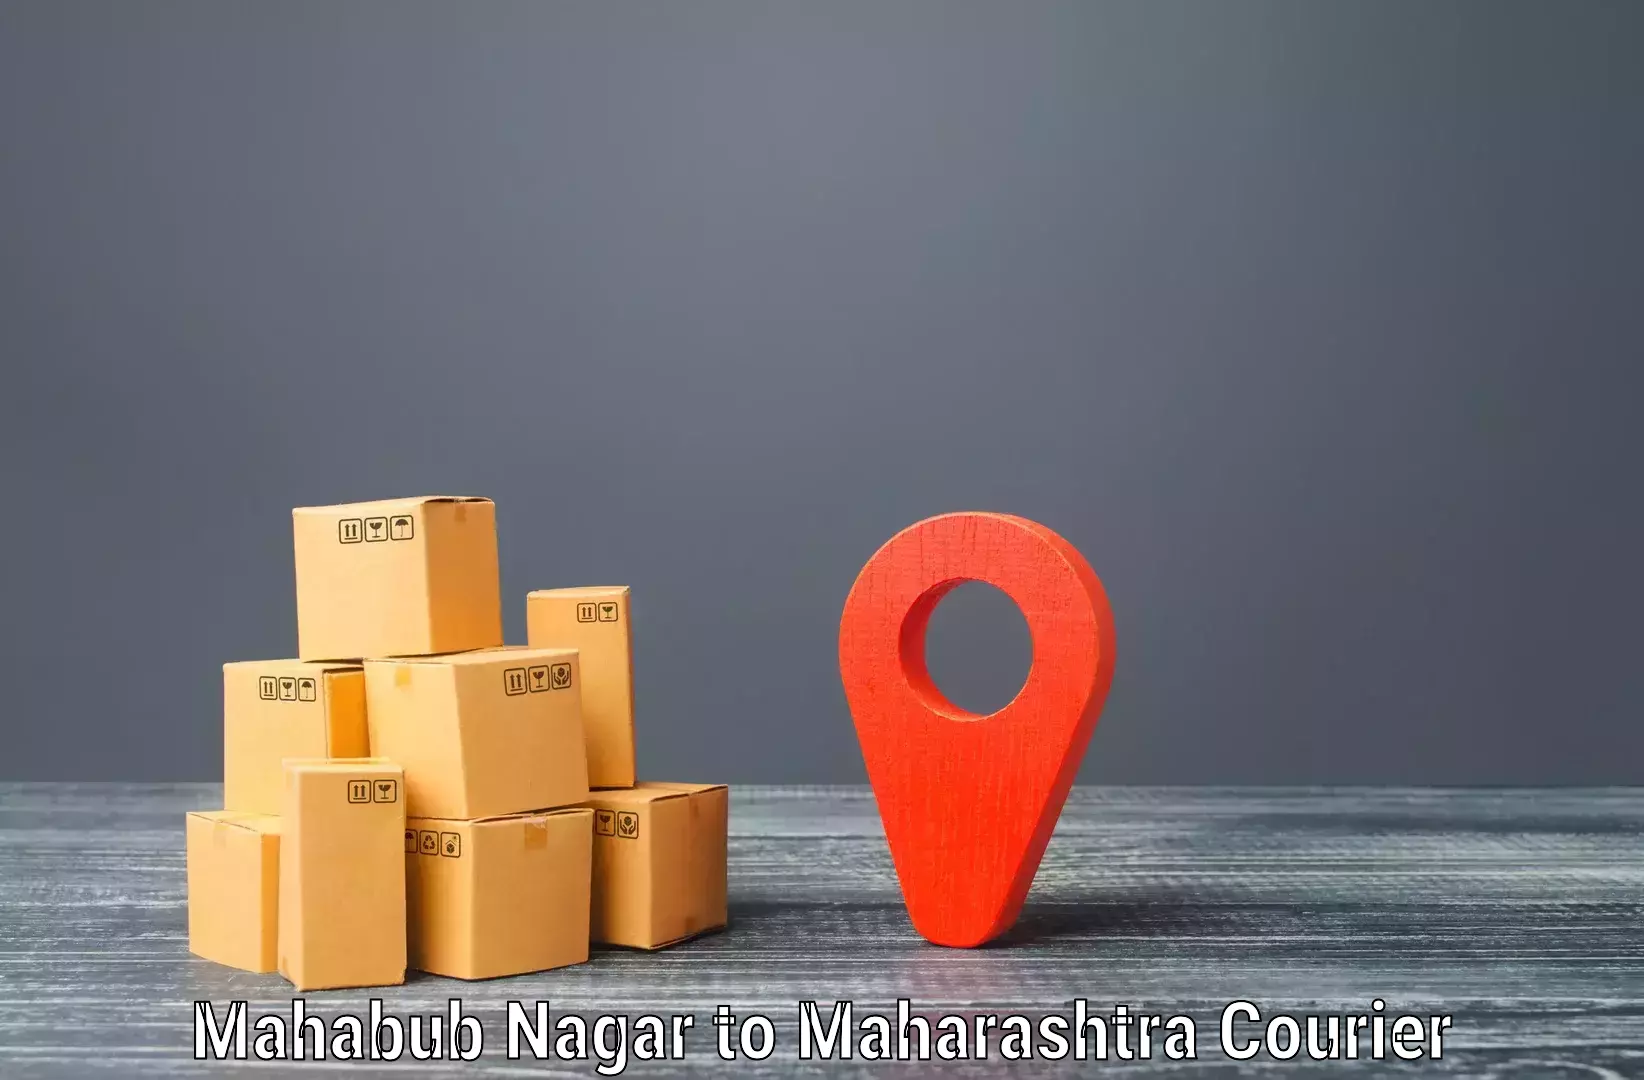 Holiday shipping services Mahabub Nagar to Digras